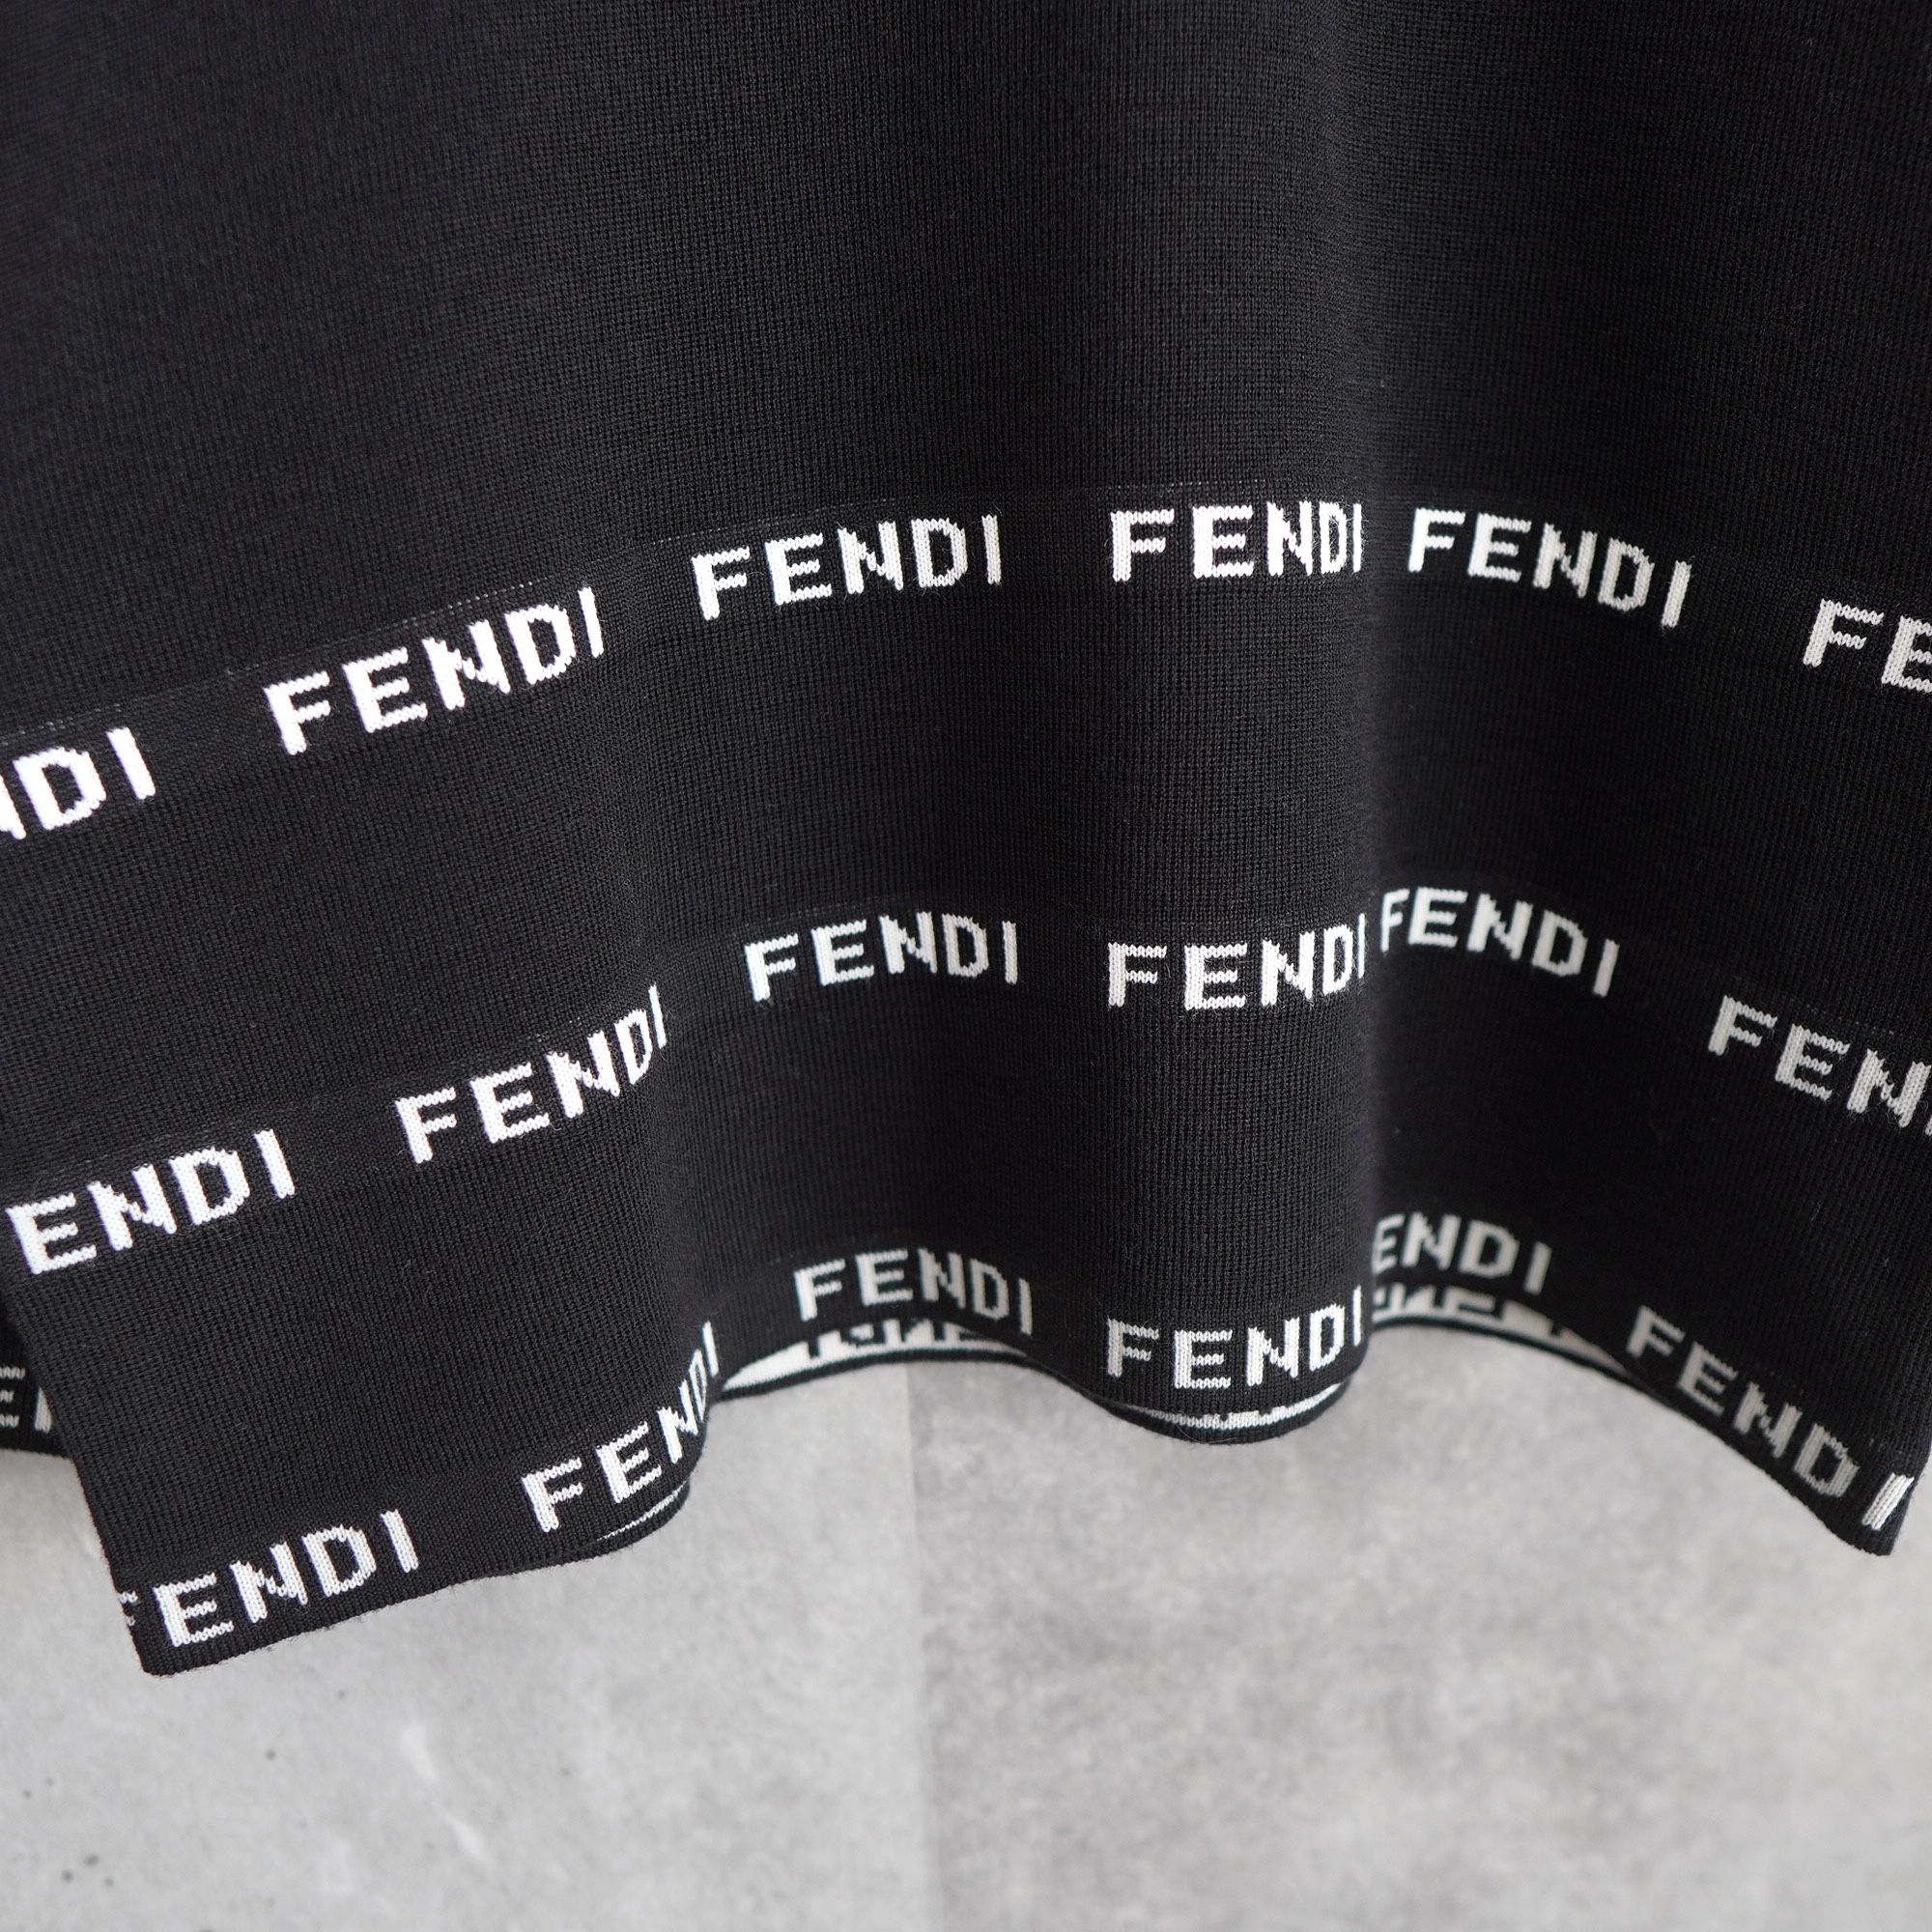 FENDI フェンディ ニット セーター ロゴデザイン イタリア製 Mサイズ